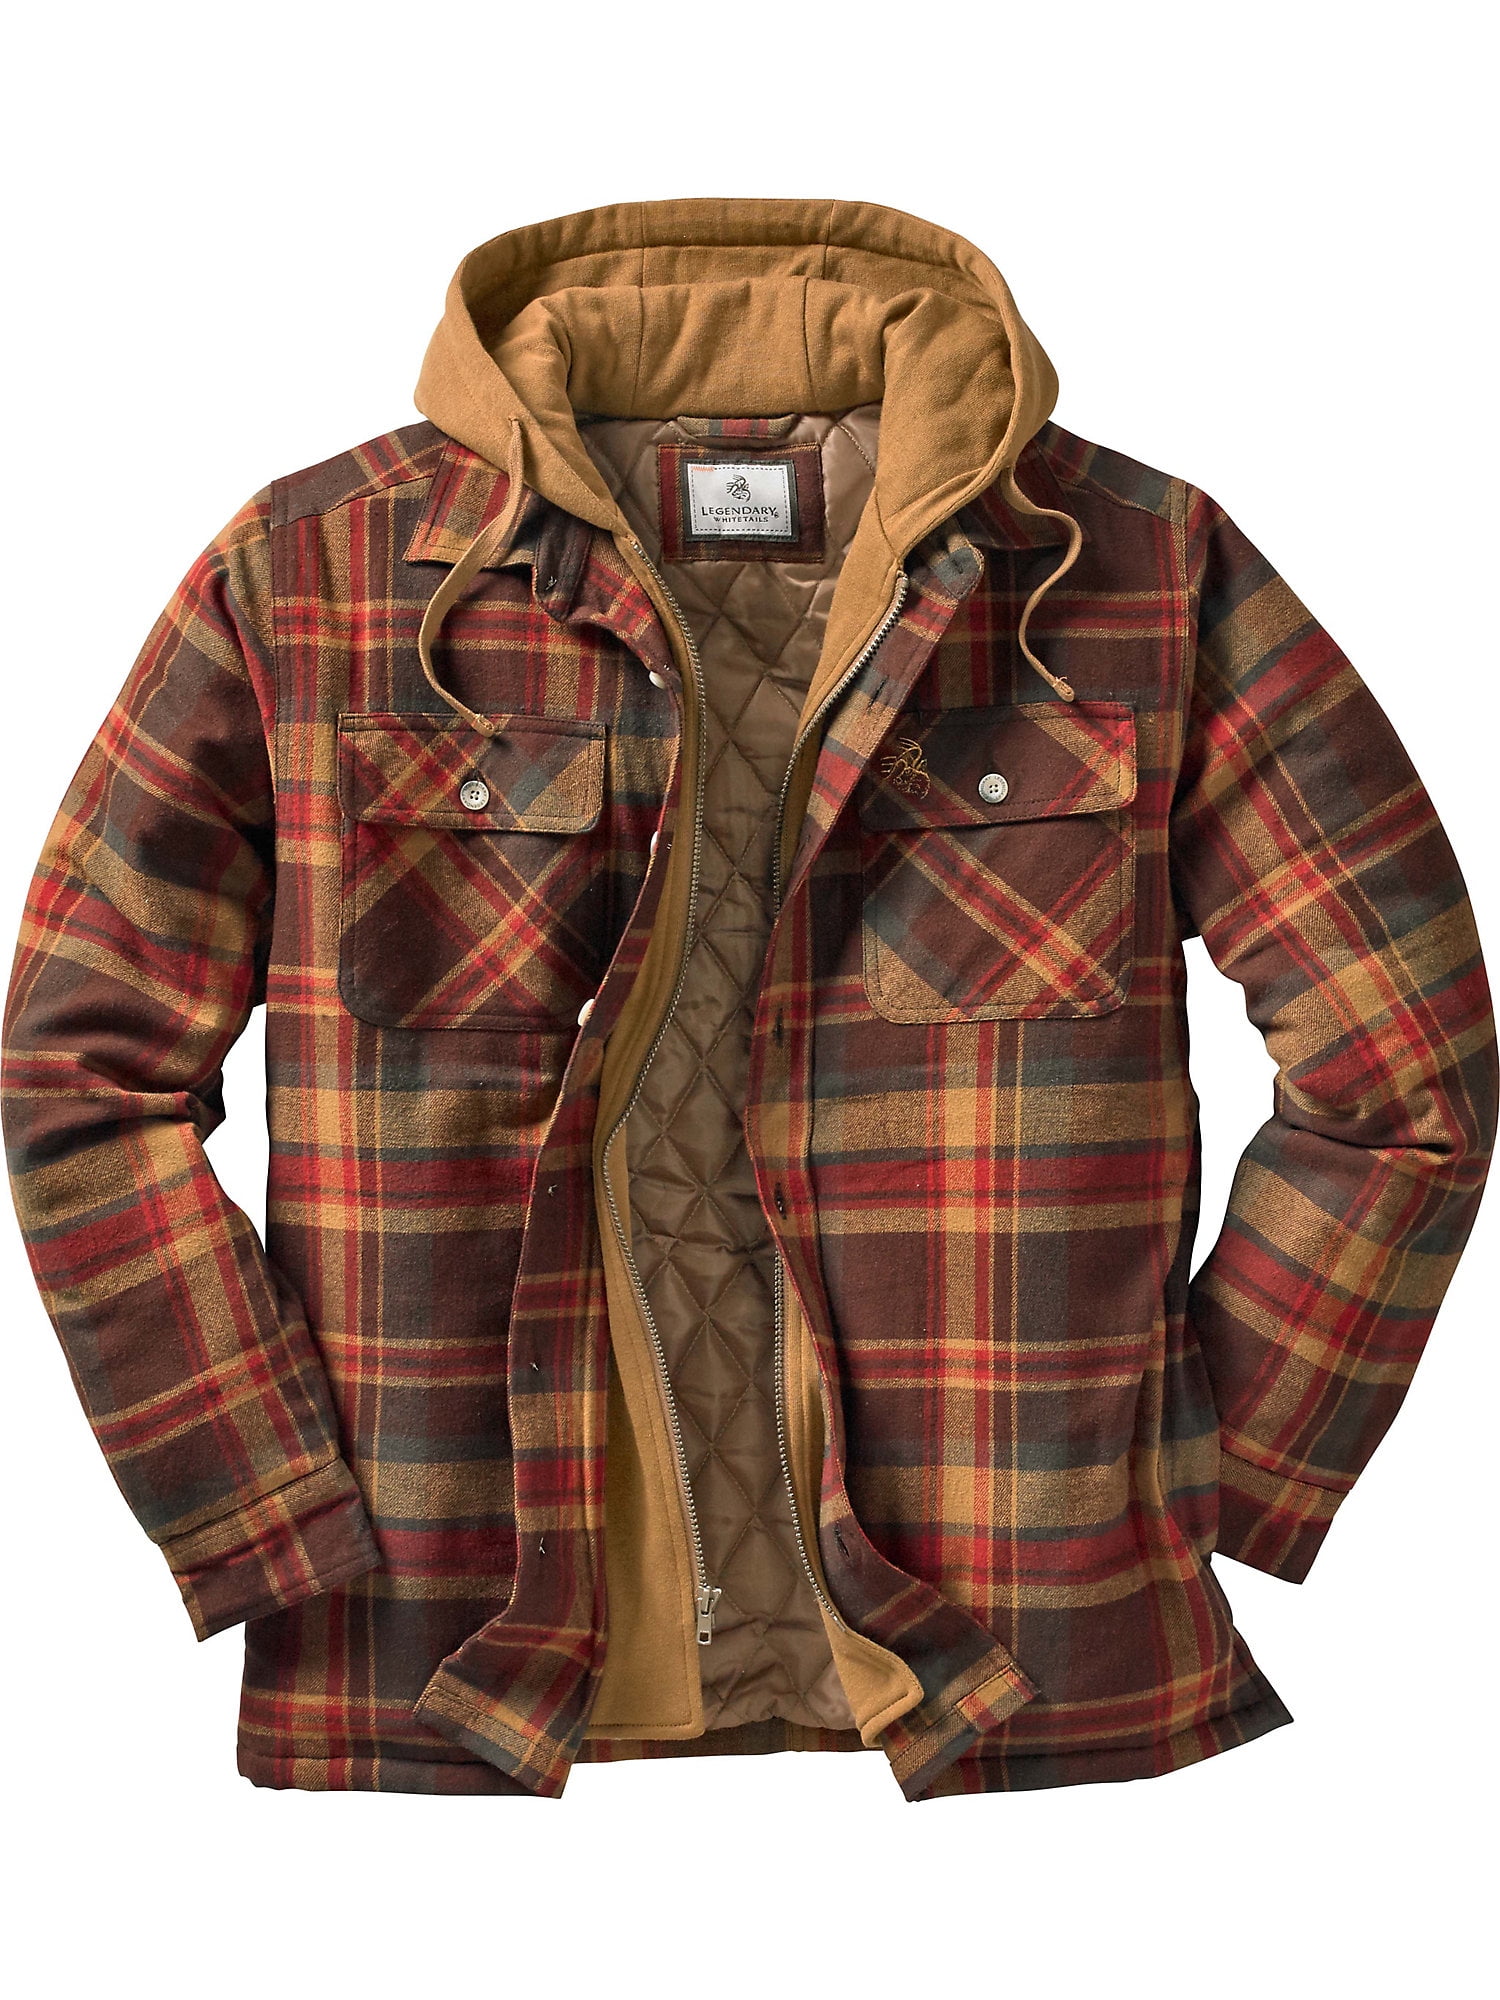 Legendary Whitetails Mens Maplewood Hooded Shirt Jacket Jacket